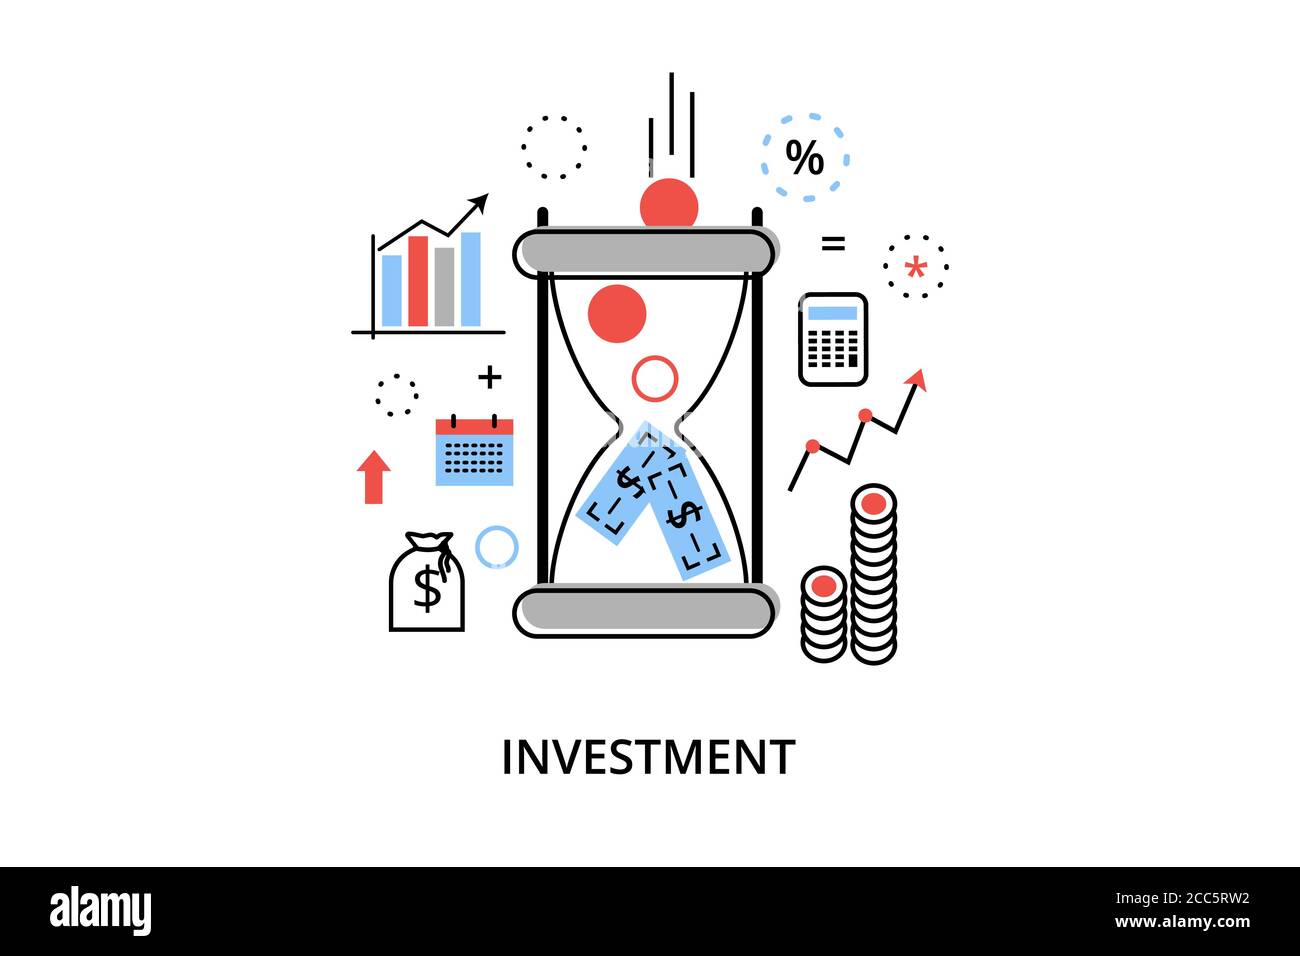 Moderno disegno piano sottile illustrazione vettoriale, concetto infografico con icone di investimento per il business e il processo finanziario, per grafica e web des Illustrazione Vettoriale